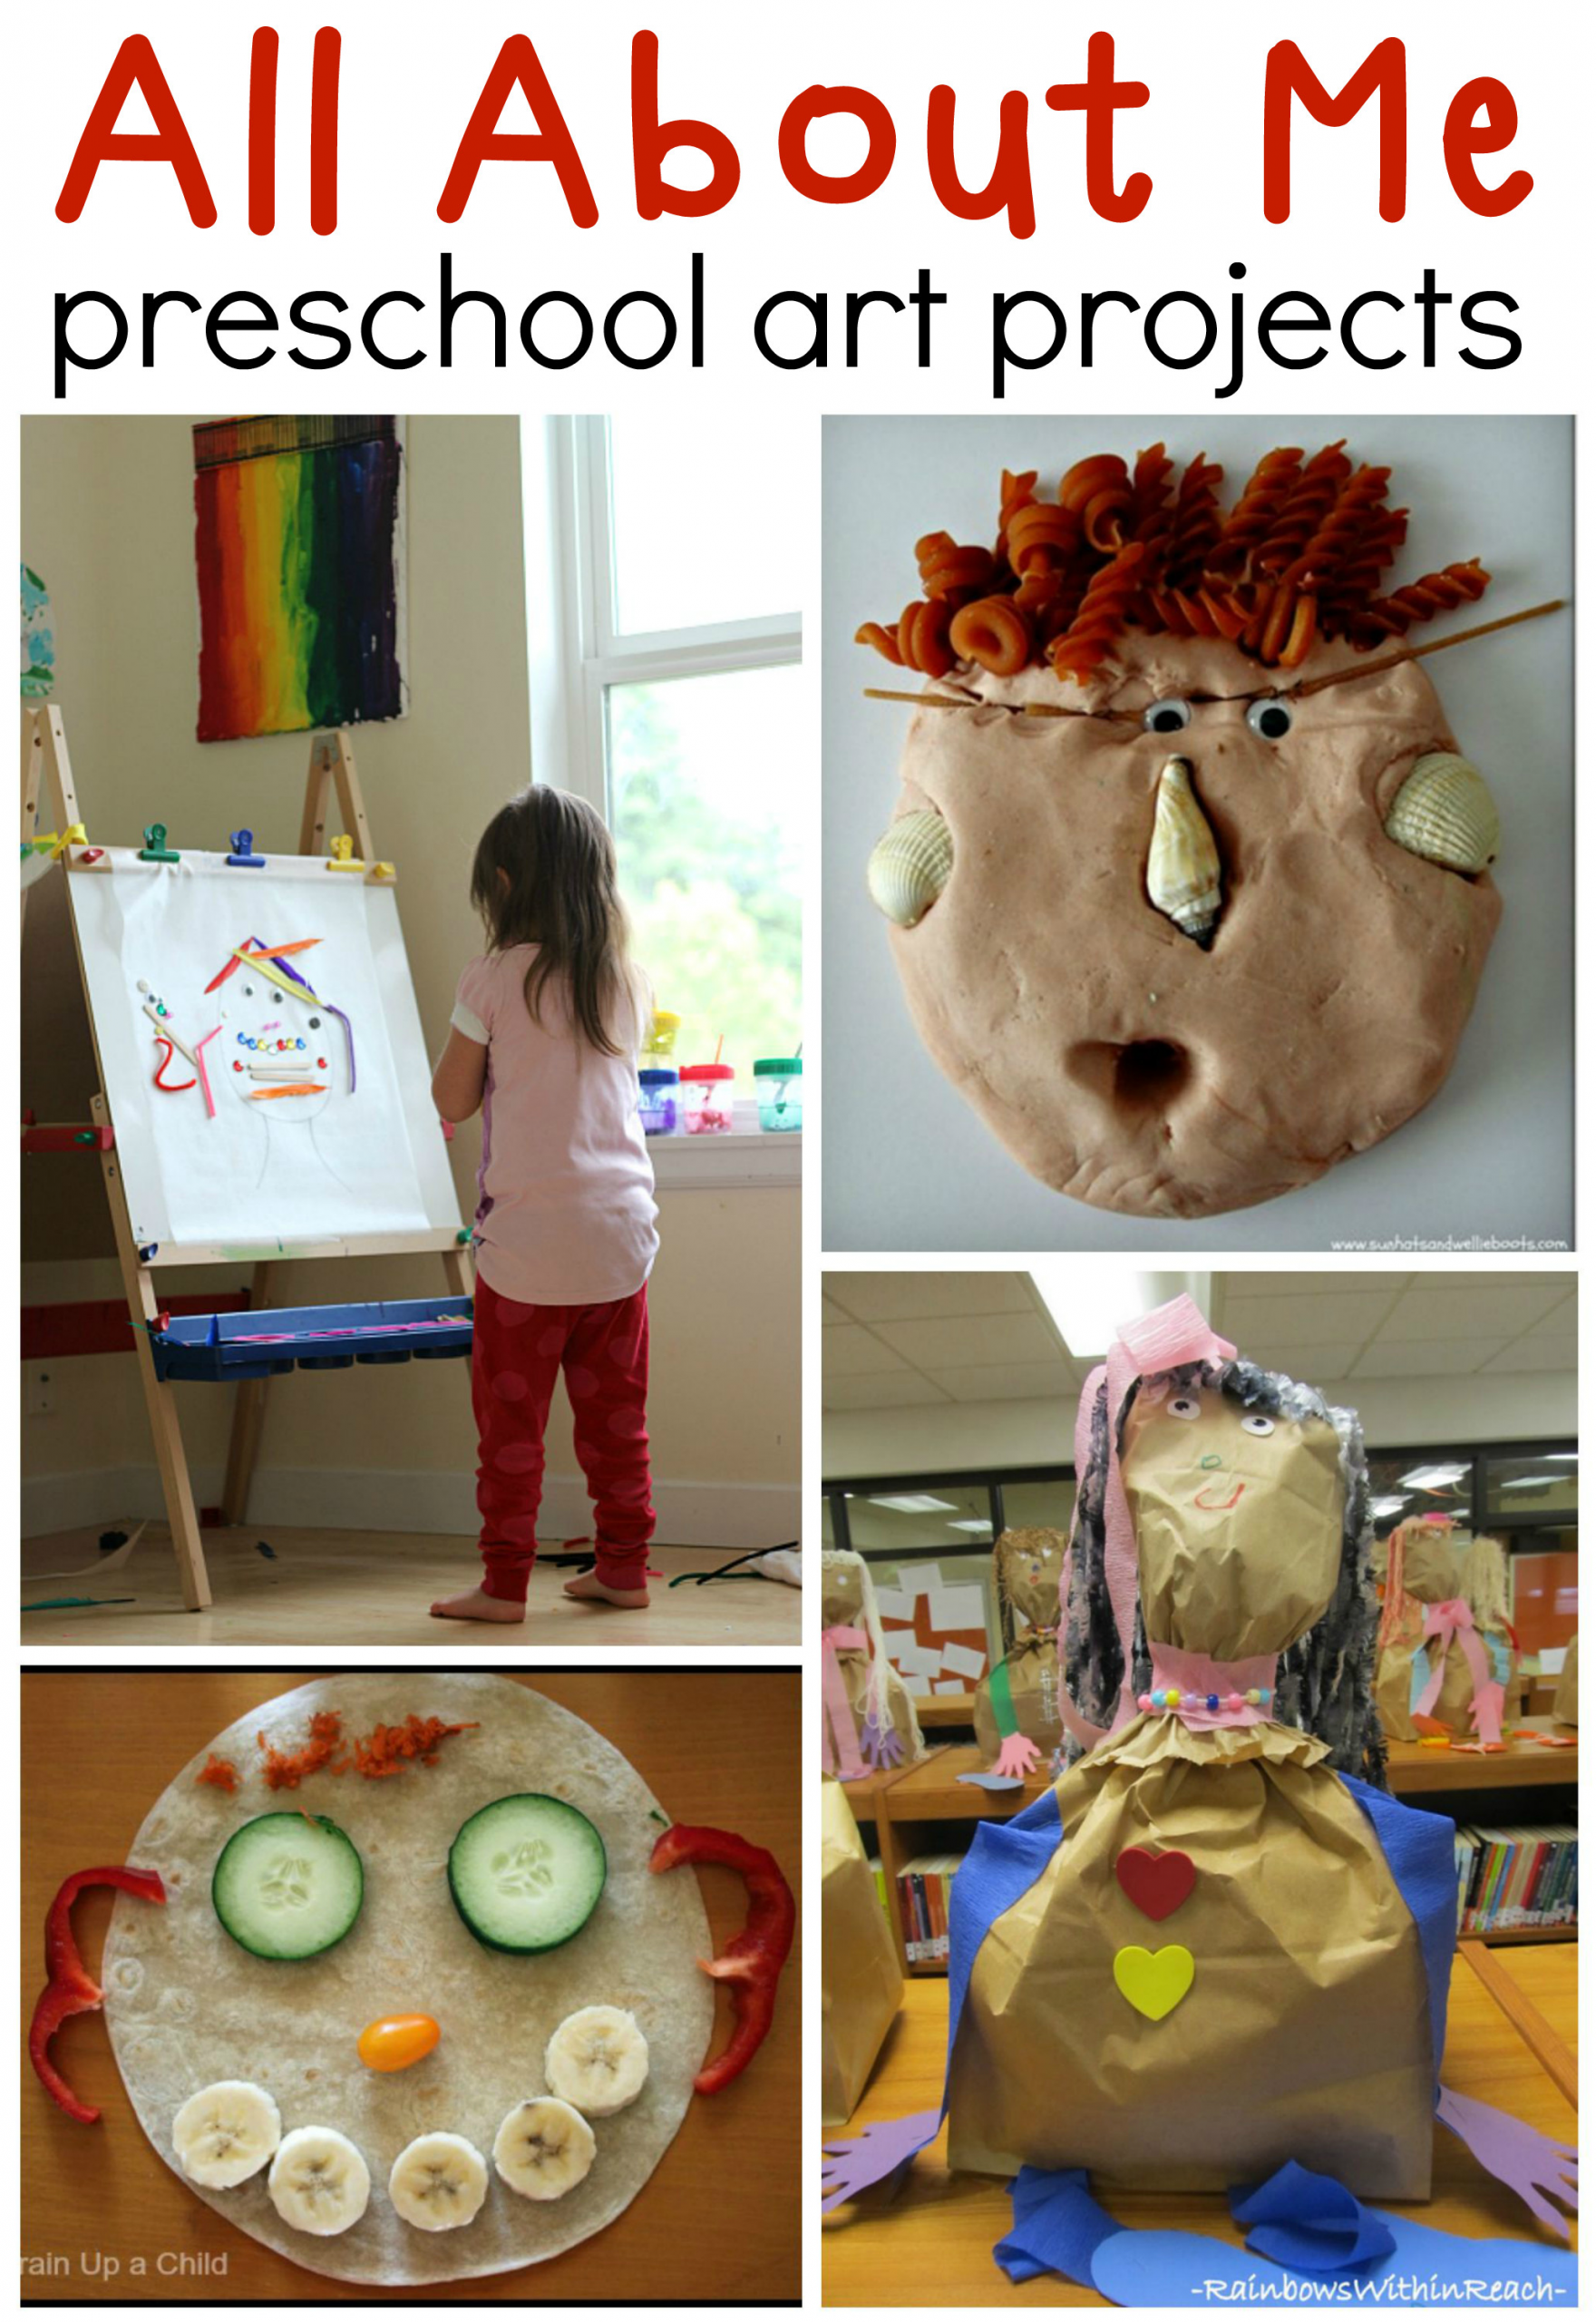 Preschool Art Project Ideas
 All about me preschool art ideas The Measured Mom